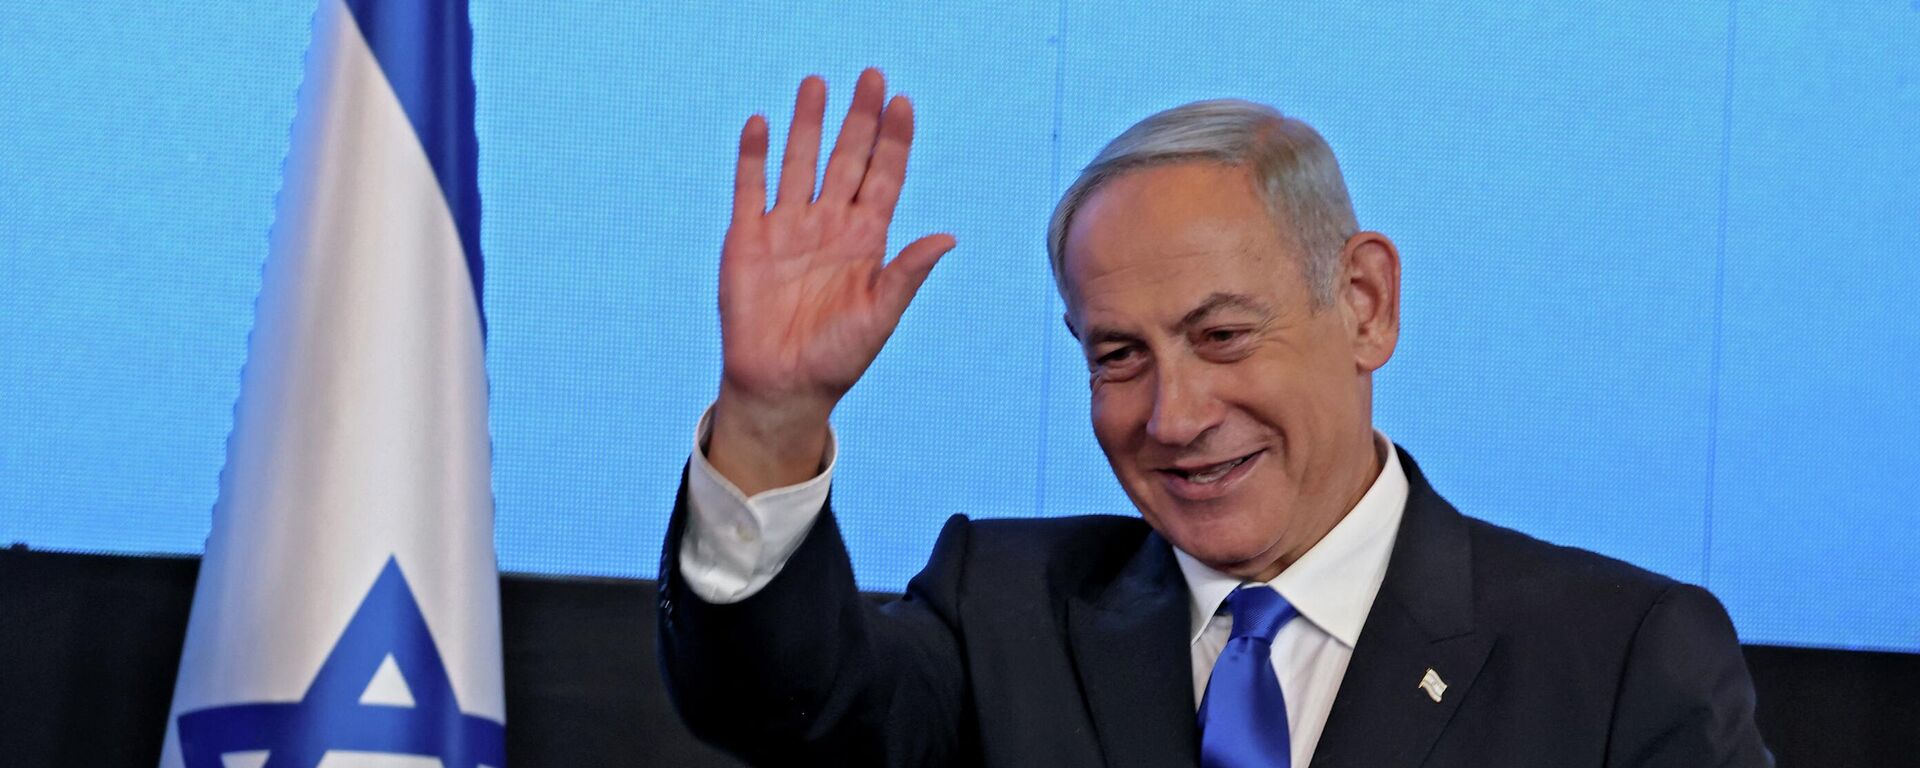 زعيم المعارضة الإسرائيلية بنيامين نتنياهو بعد فوزه في الانتخابات العامة في إسرائيل، نوفمبر/ تشرين الثاني 2022. - سبوتنيك عربي, 1920, 14.11.2022